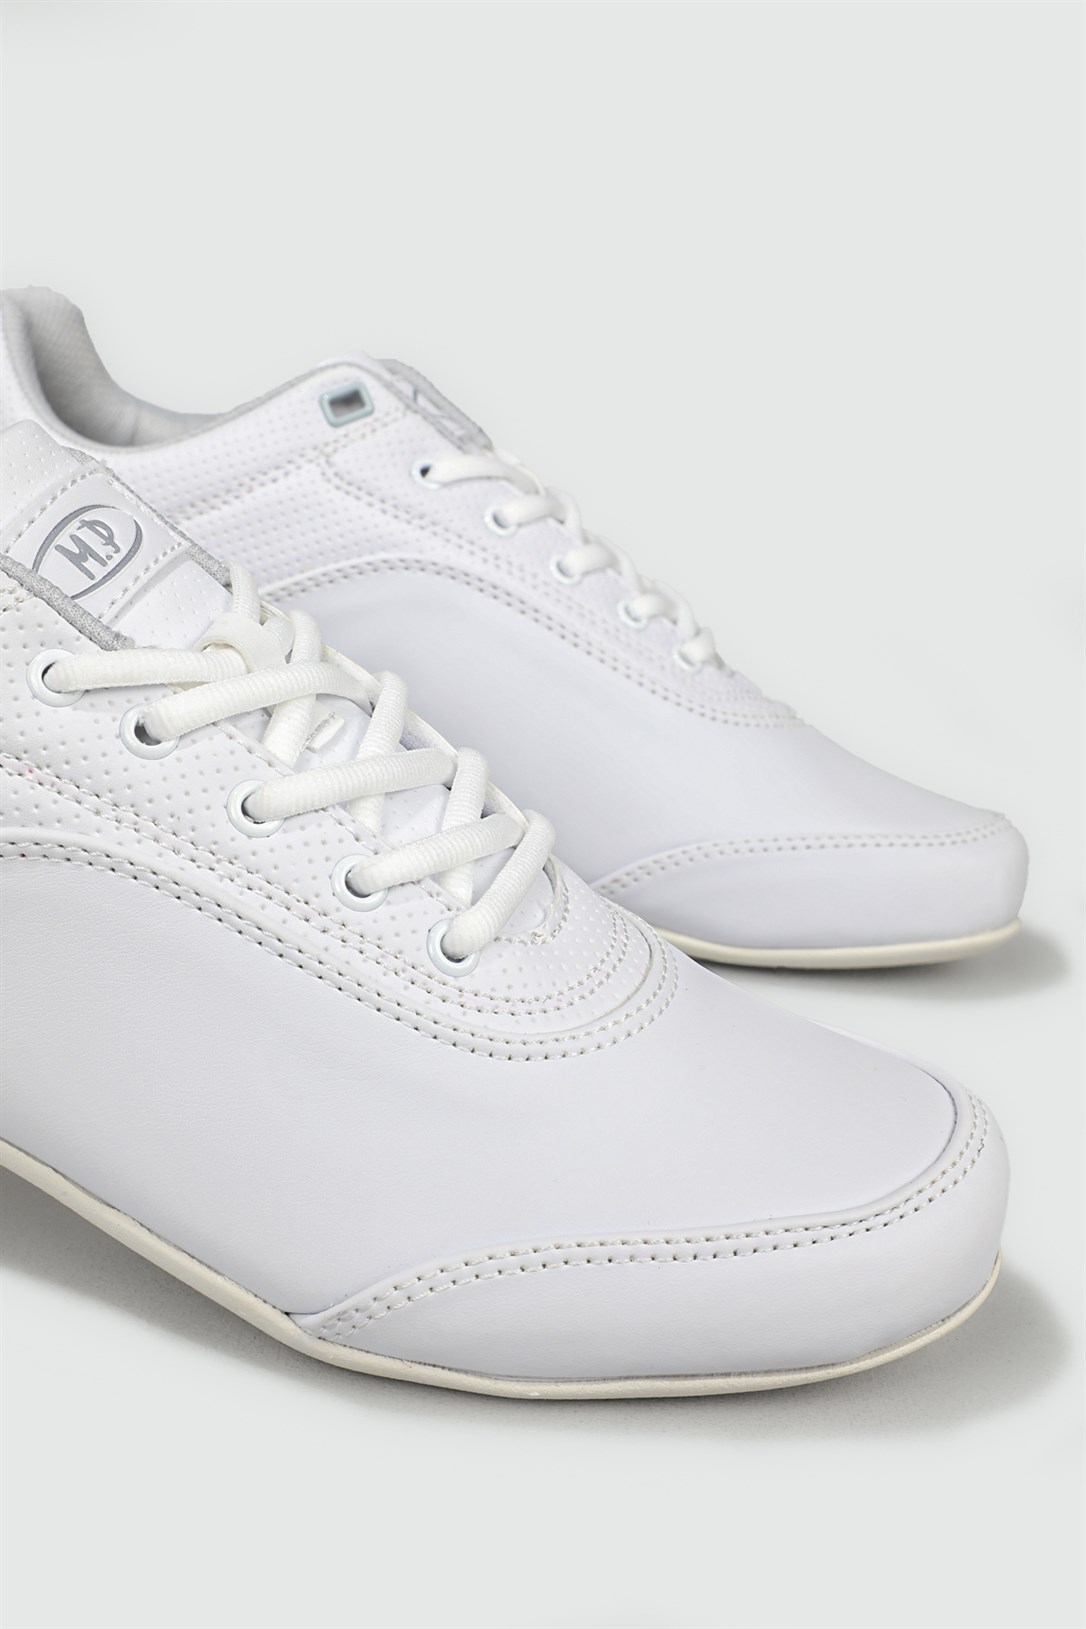 M.P Casual Beyaz Erkek Spor Ayakkabı 221-7332 | Ayakkabı City